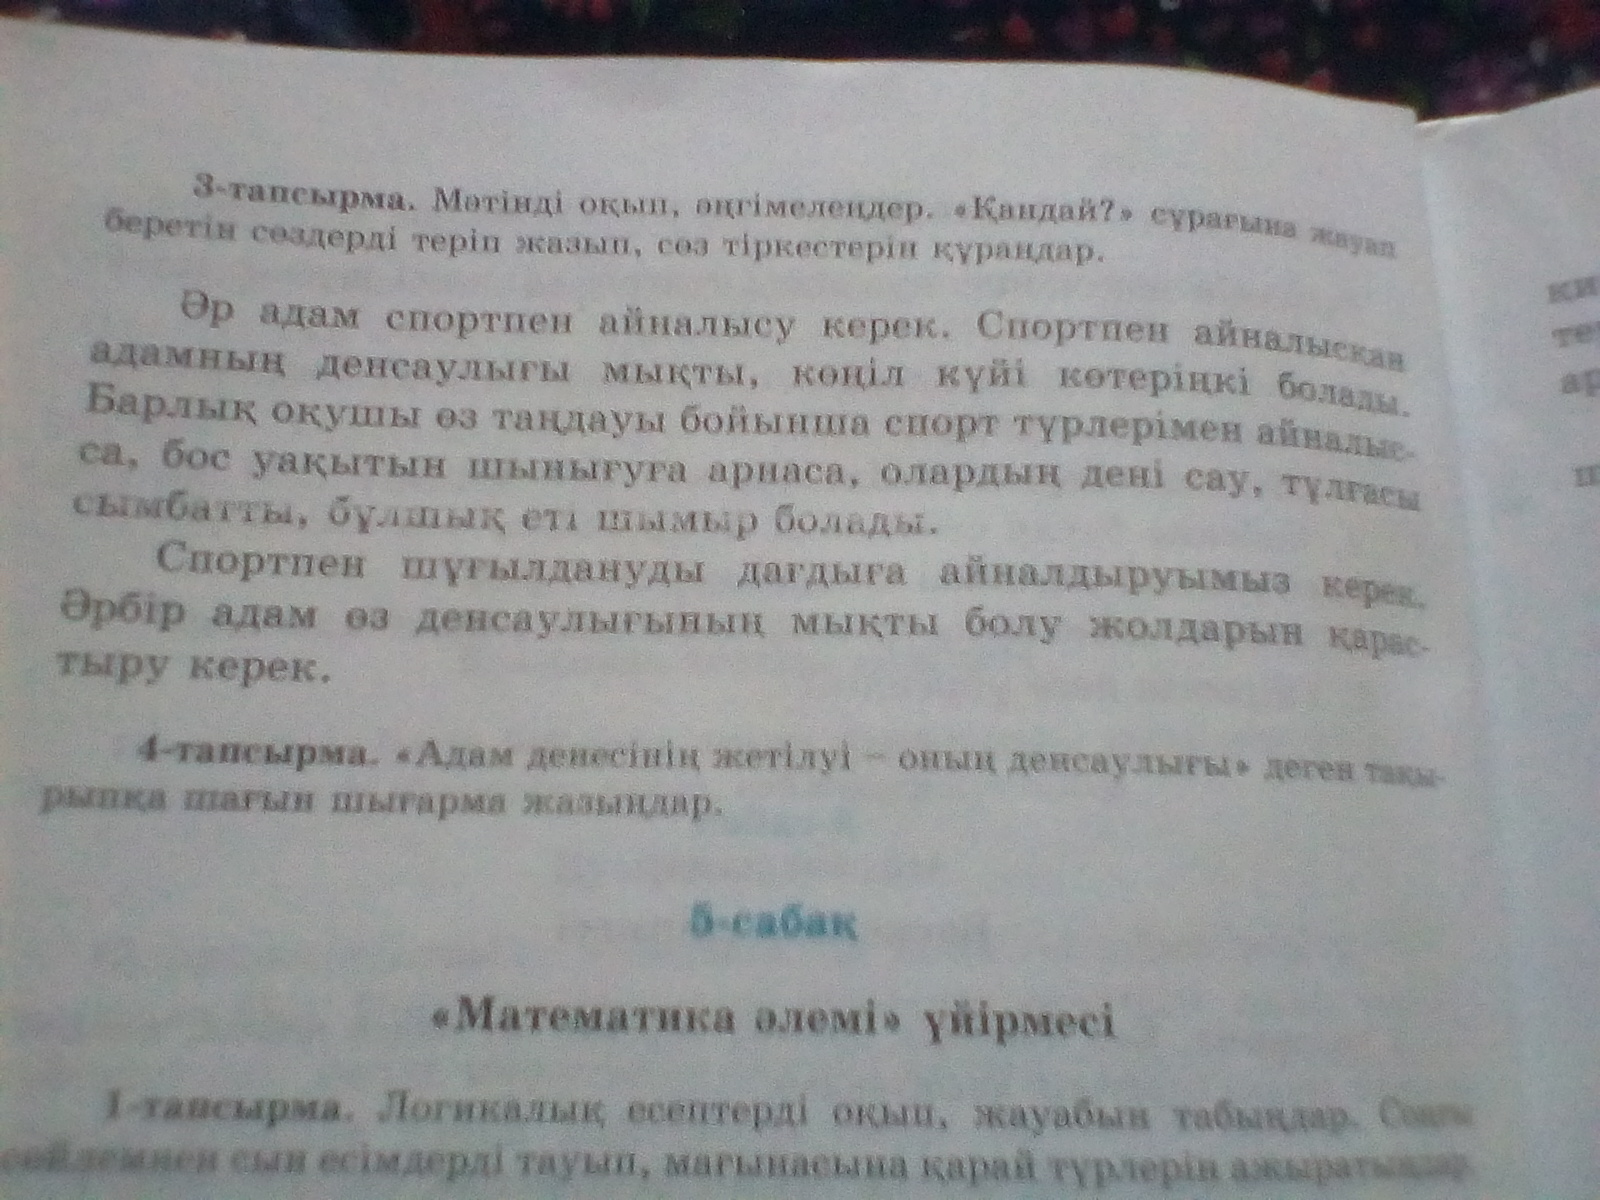 Как перевести текст с казахского на русский по фото